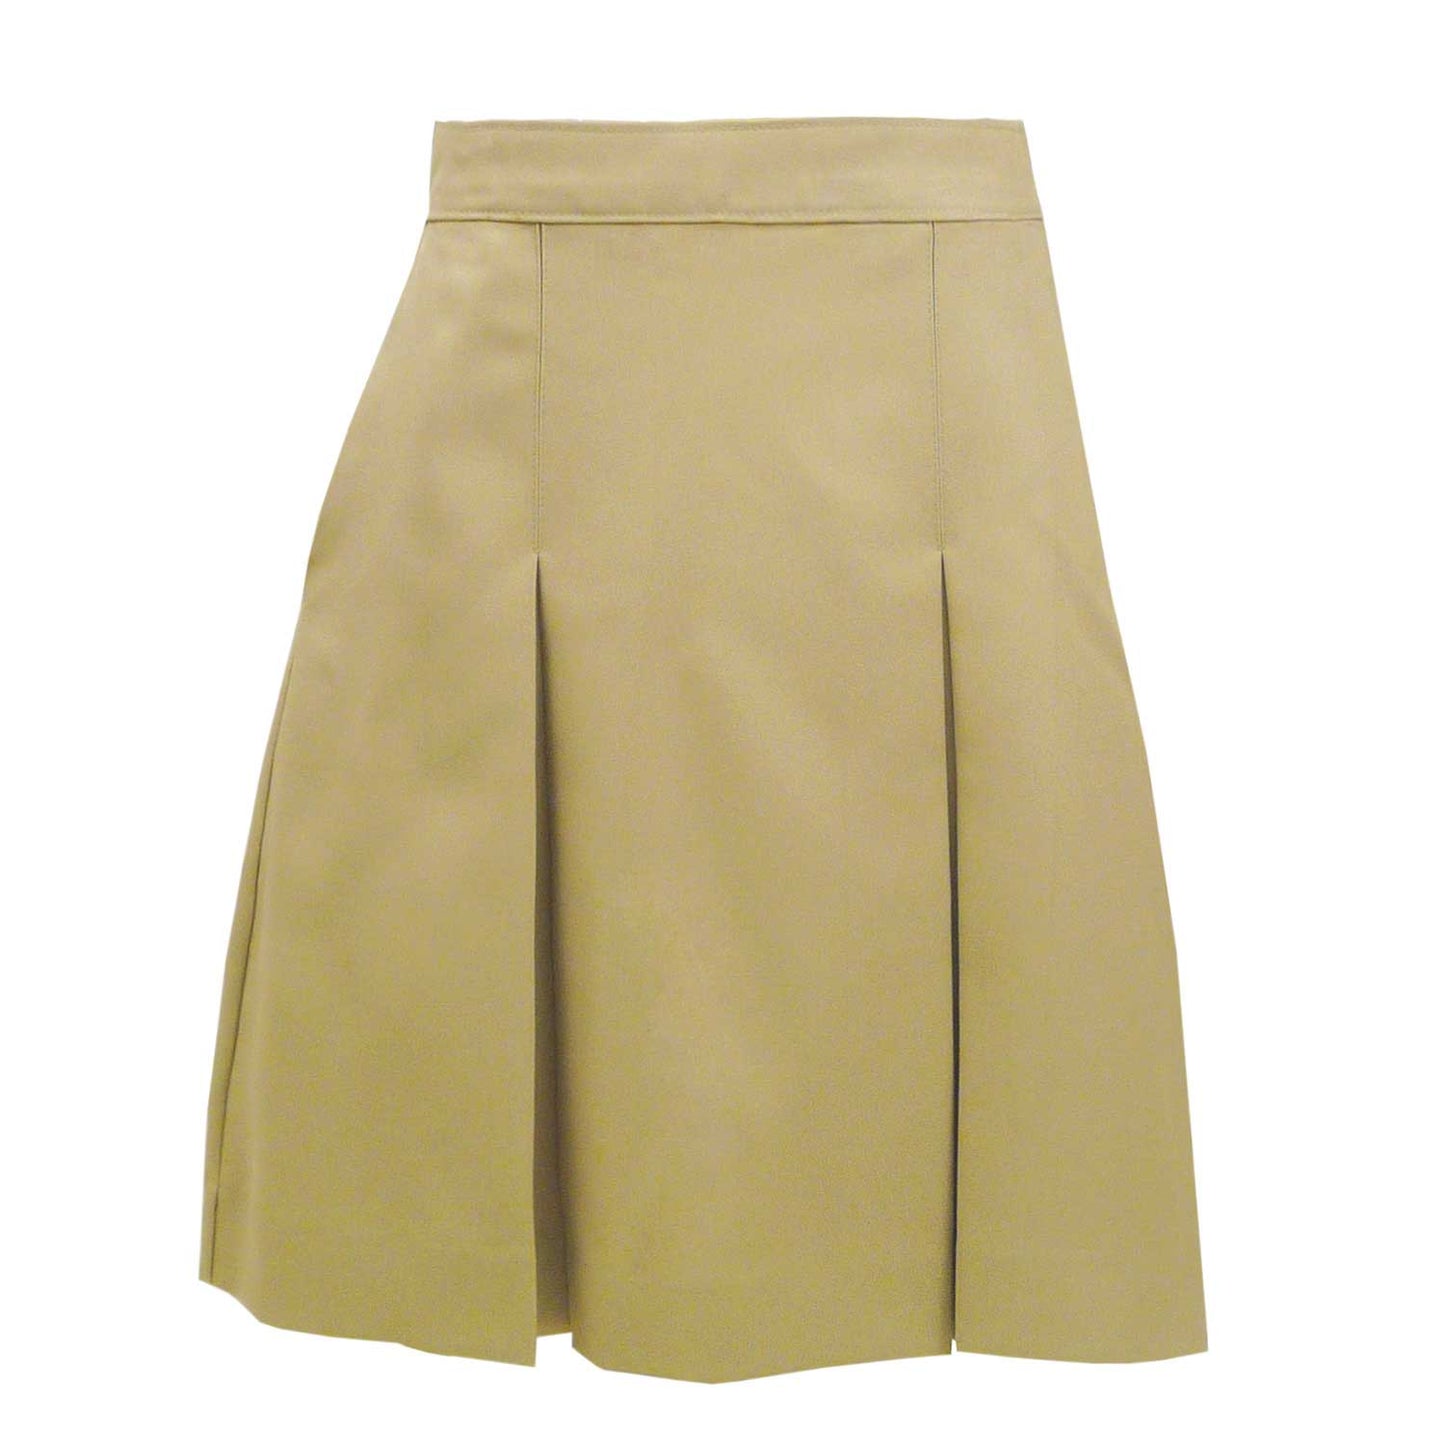 Skirt Model 34 - Blend Solids - 1107